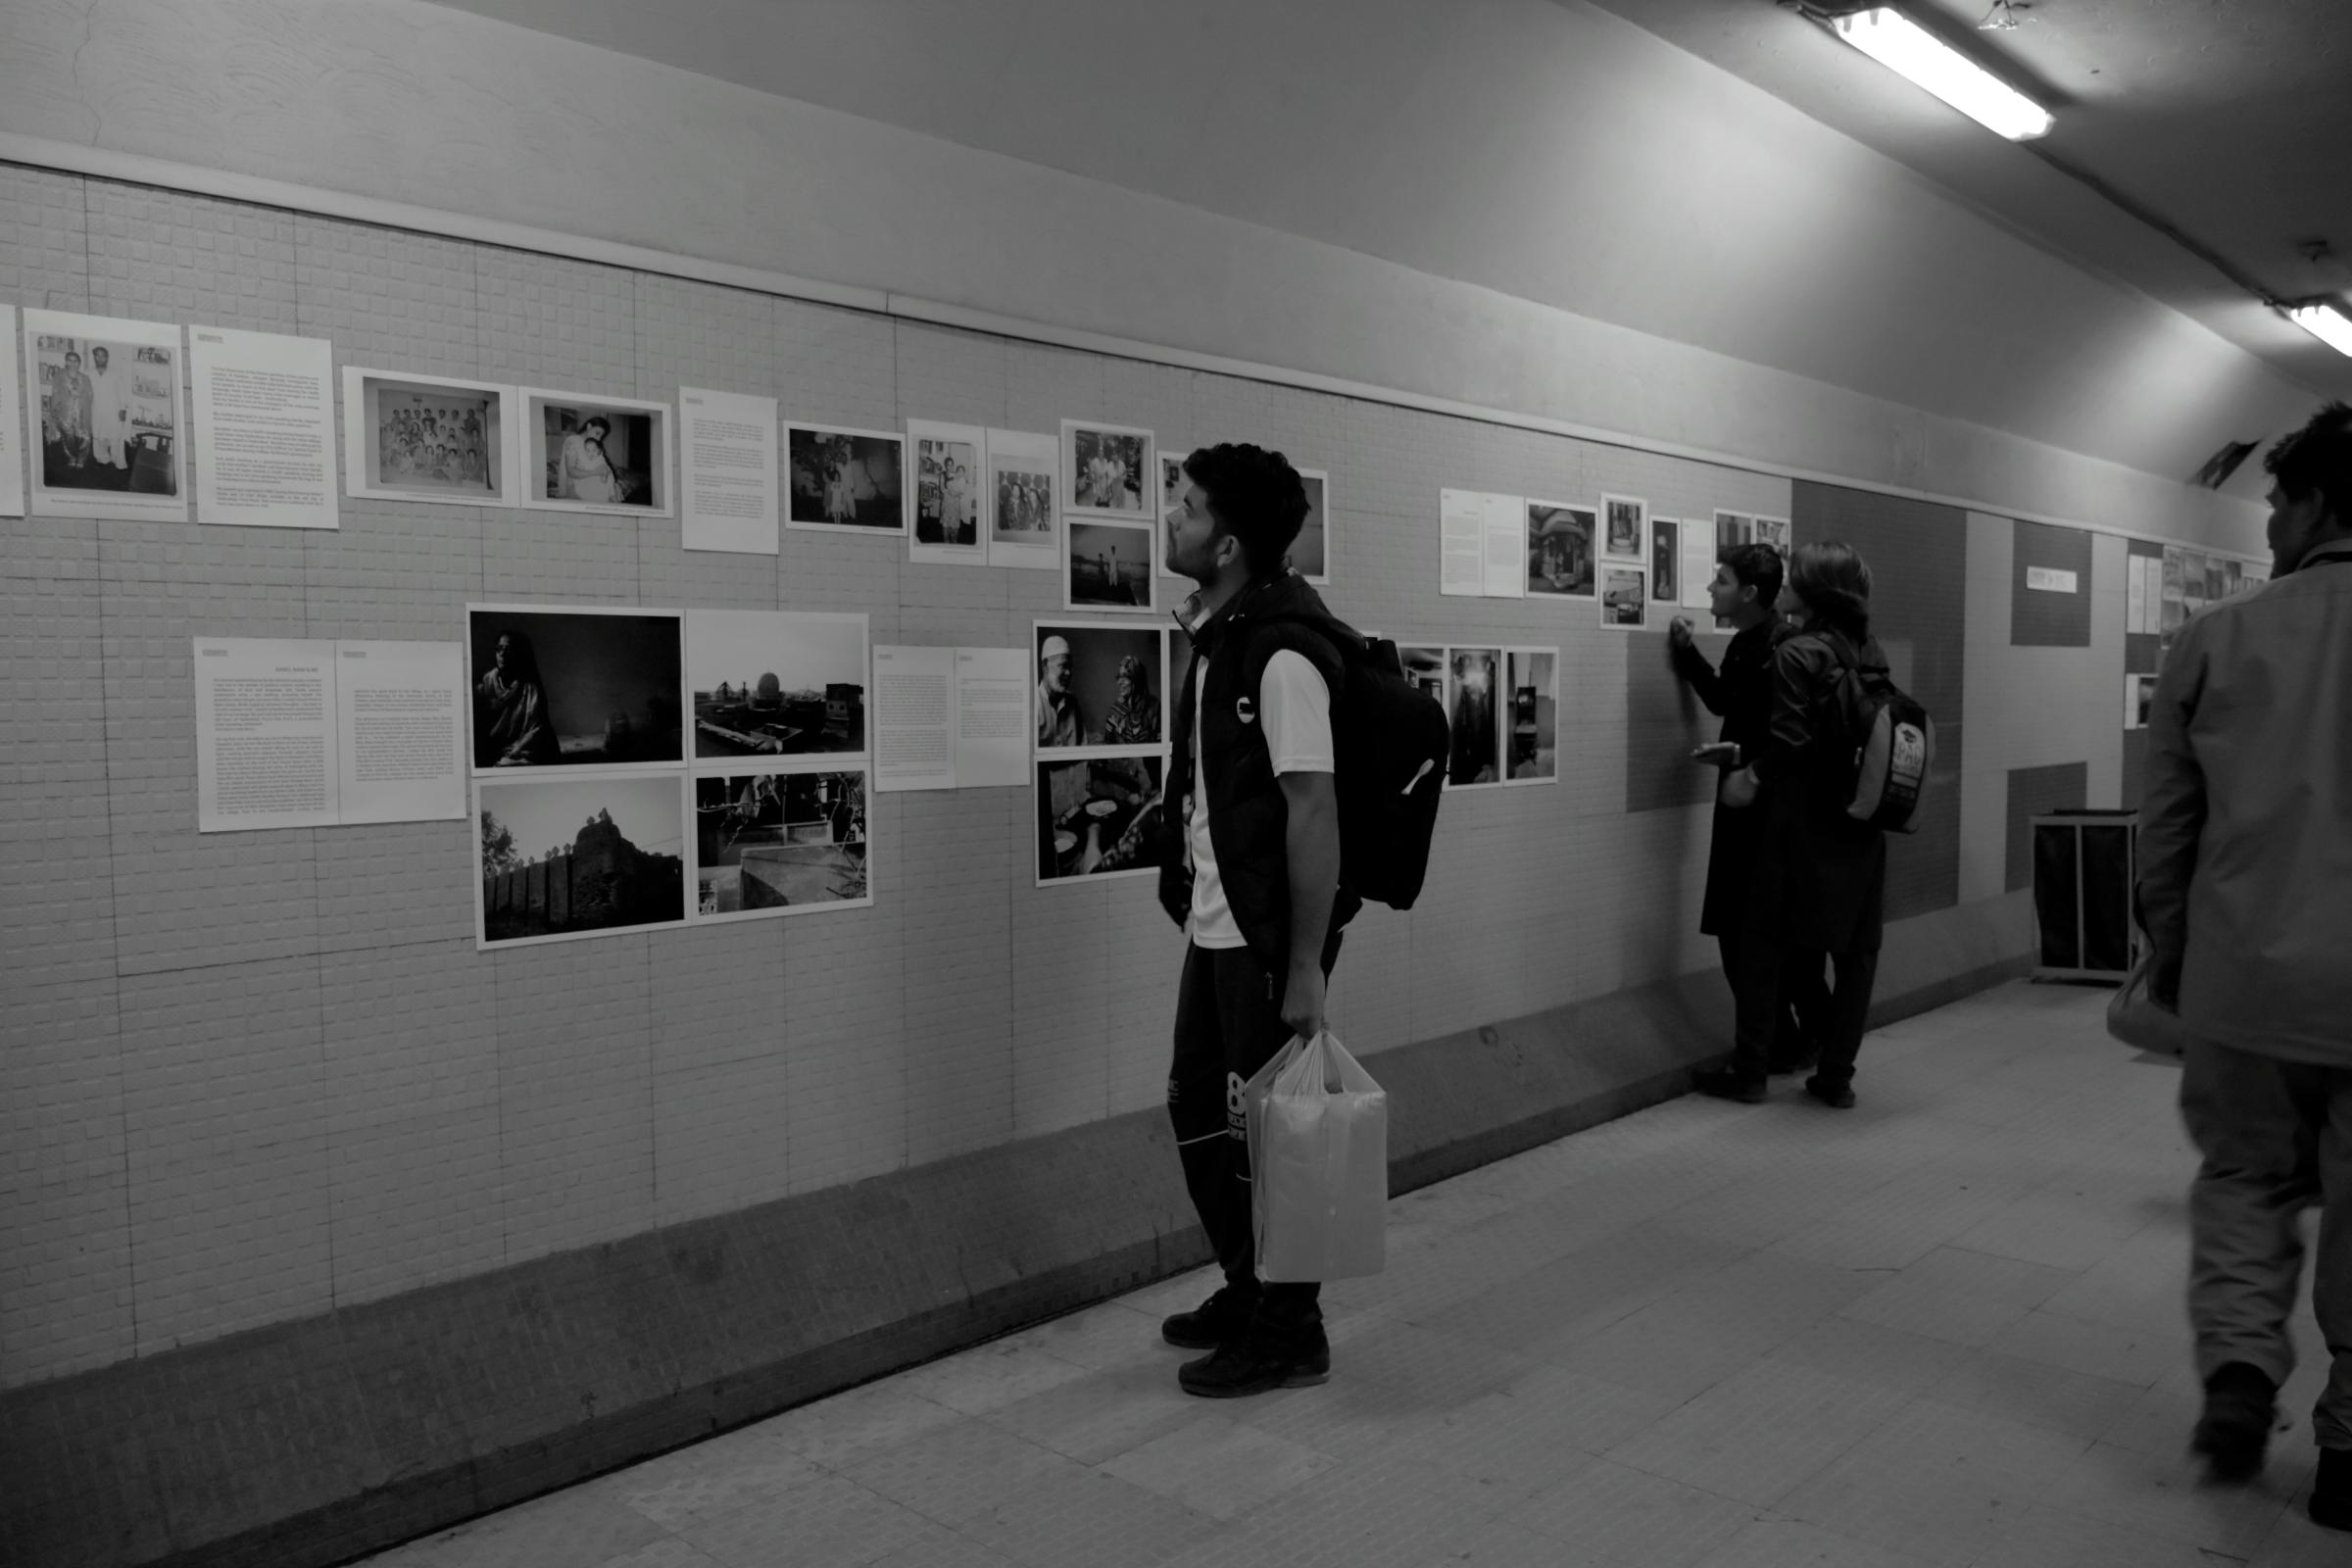 Pakistan Photo Festival Fellowship Exhibition- Lahore Metro Bus Station